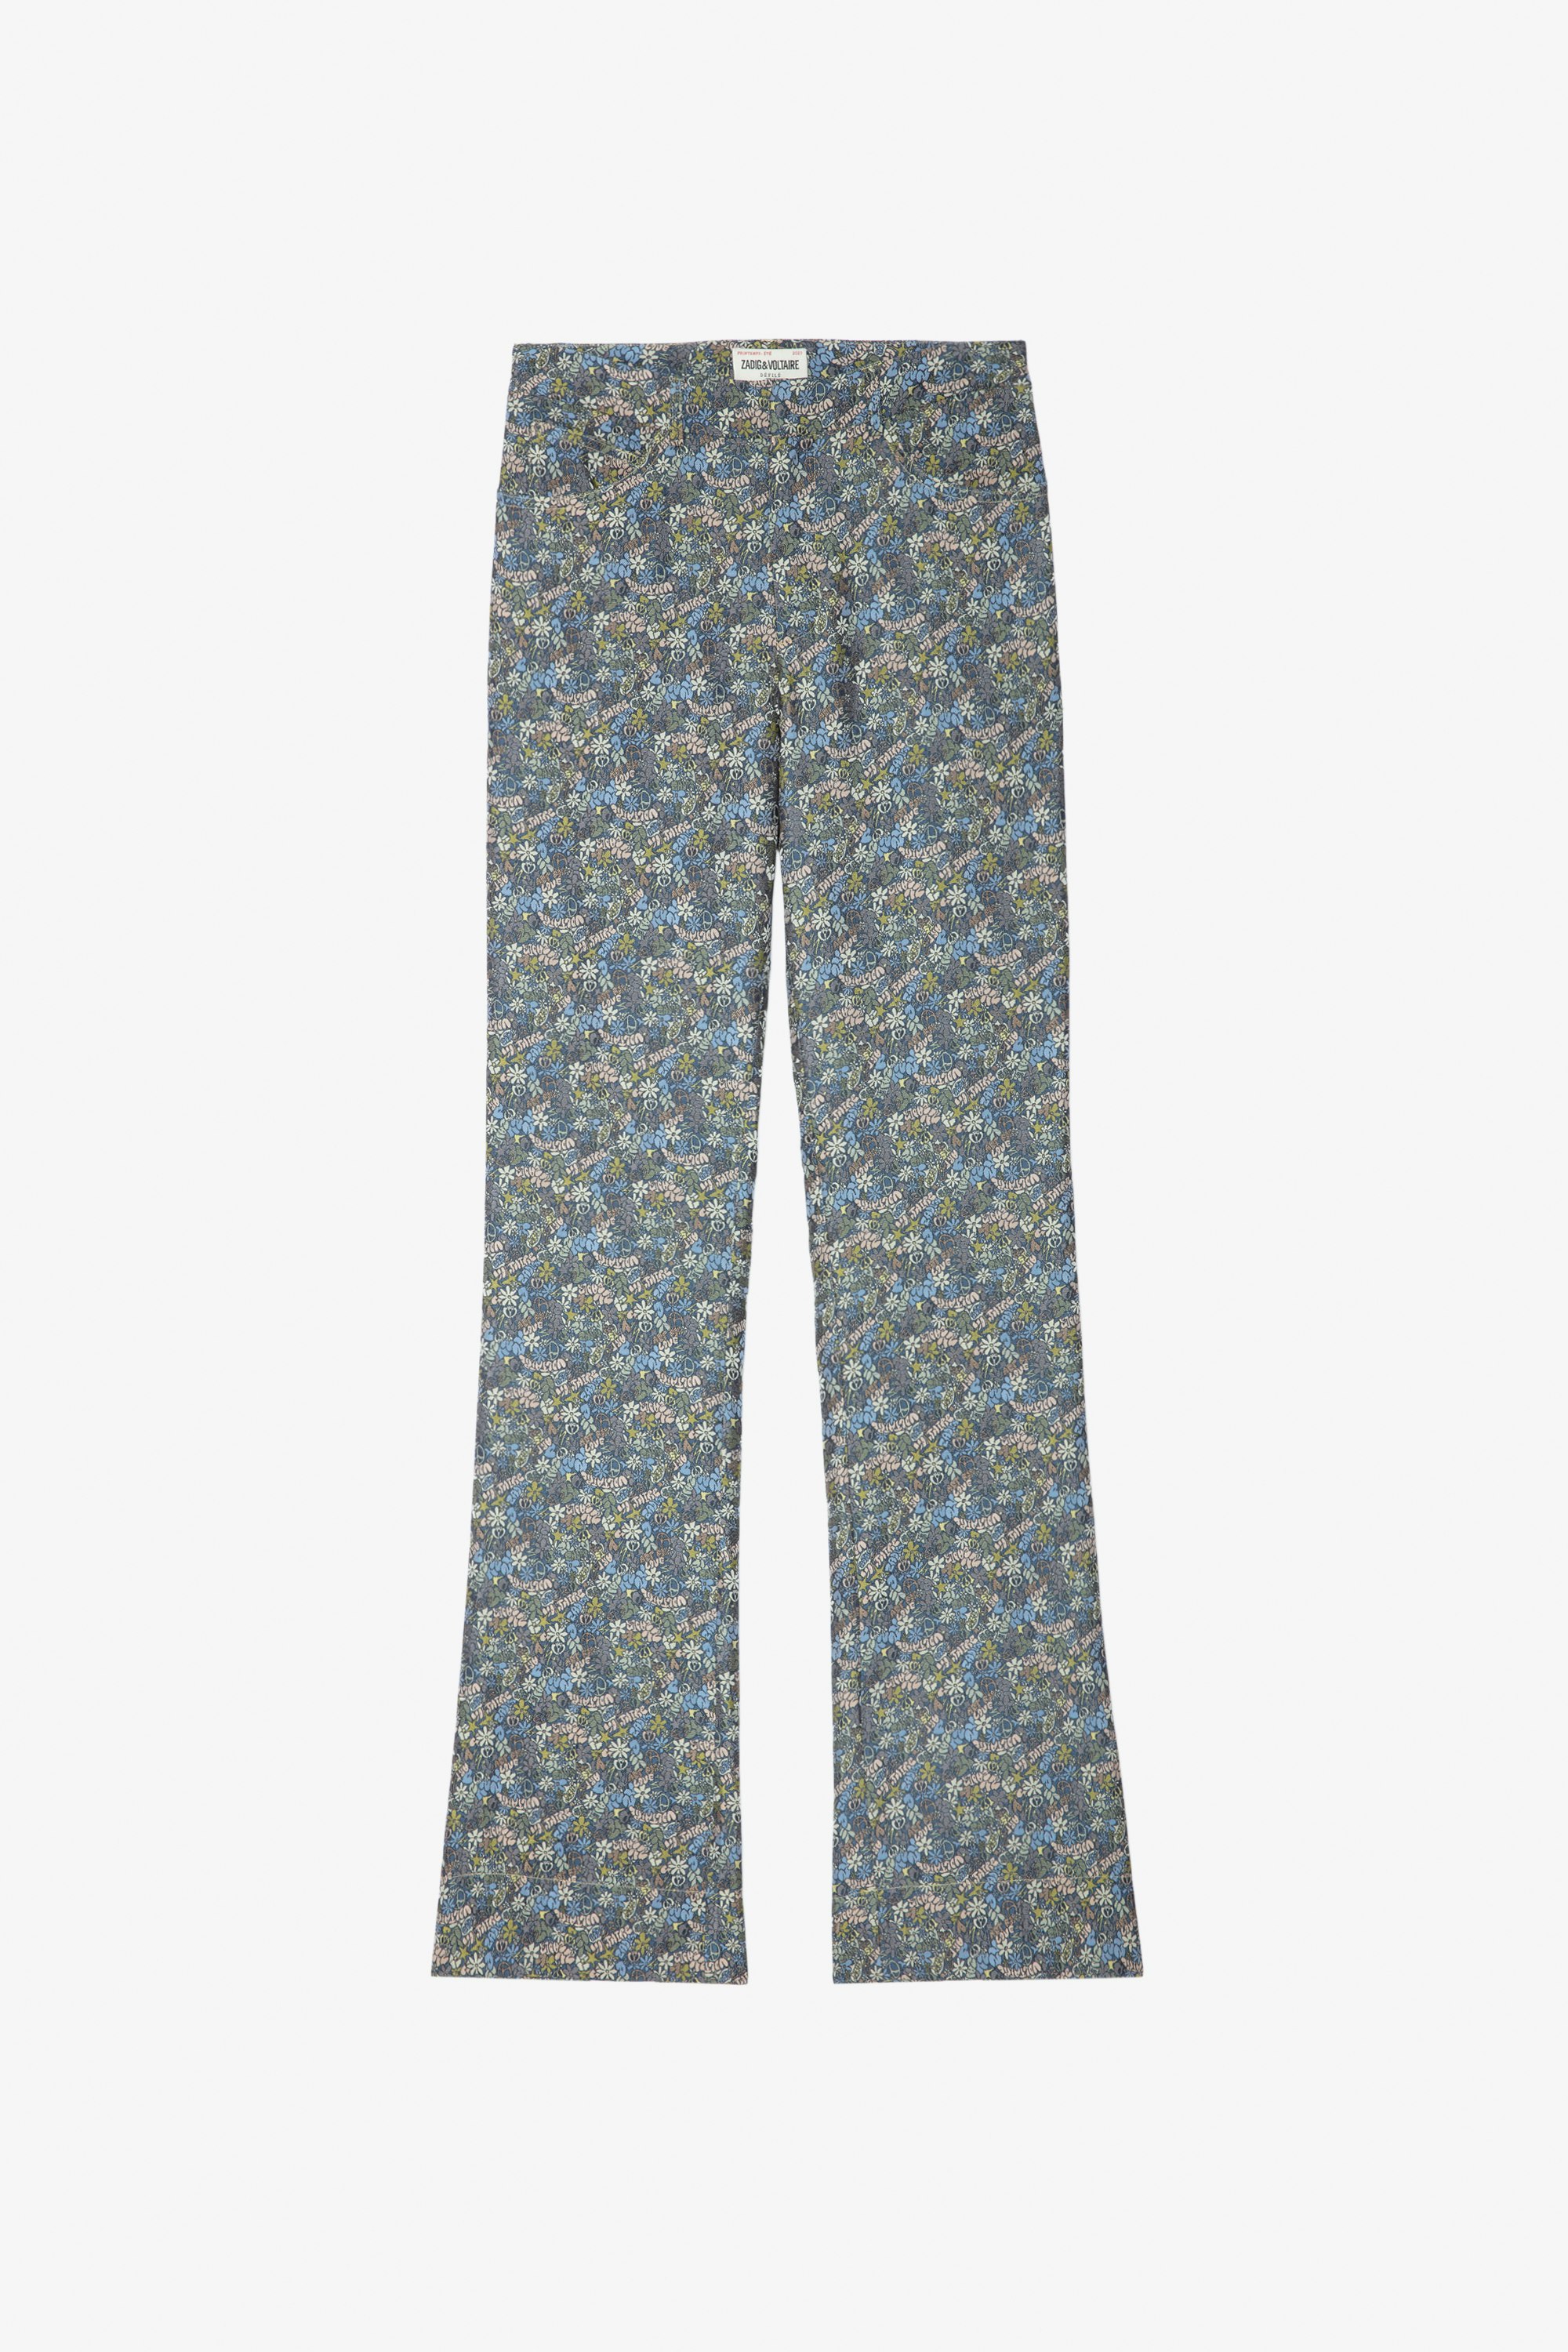 Pantaloni Pistol Pantaloni svasati in jacquard multicolore con stampa floreale - Donna